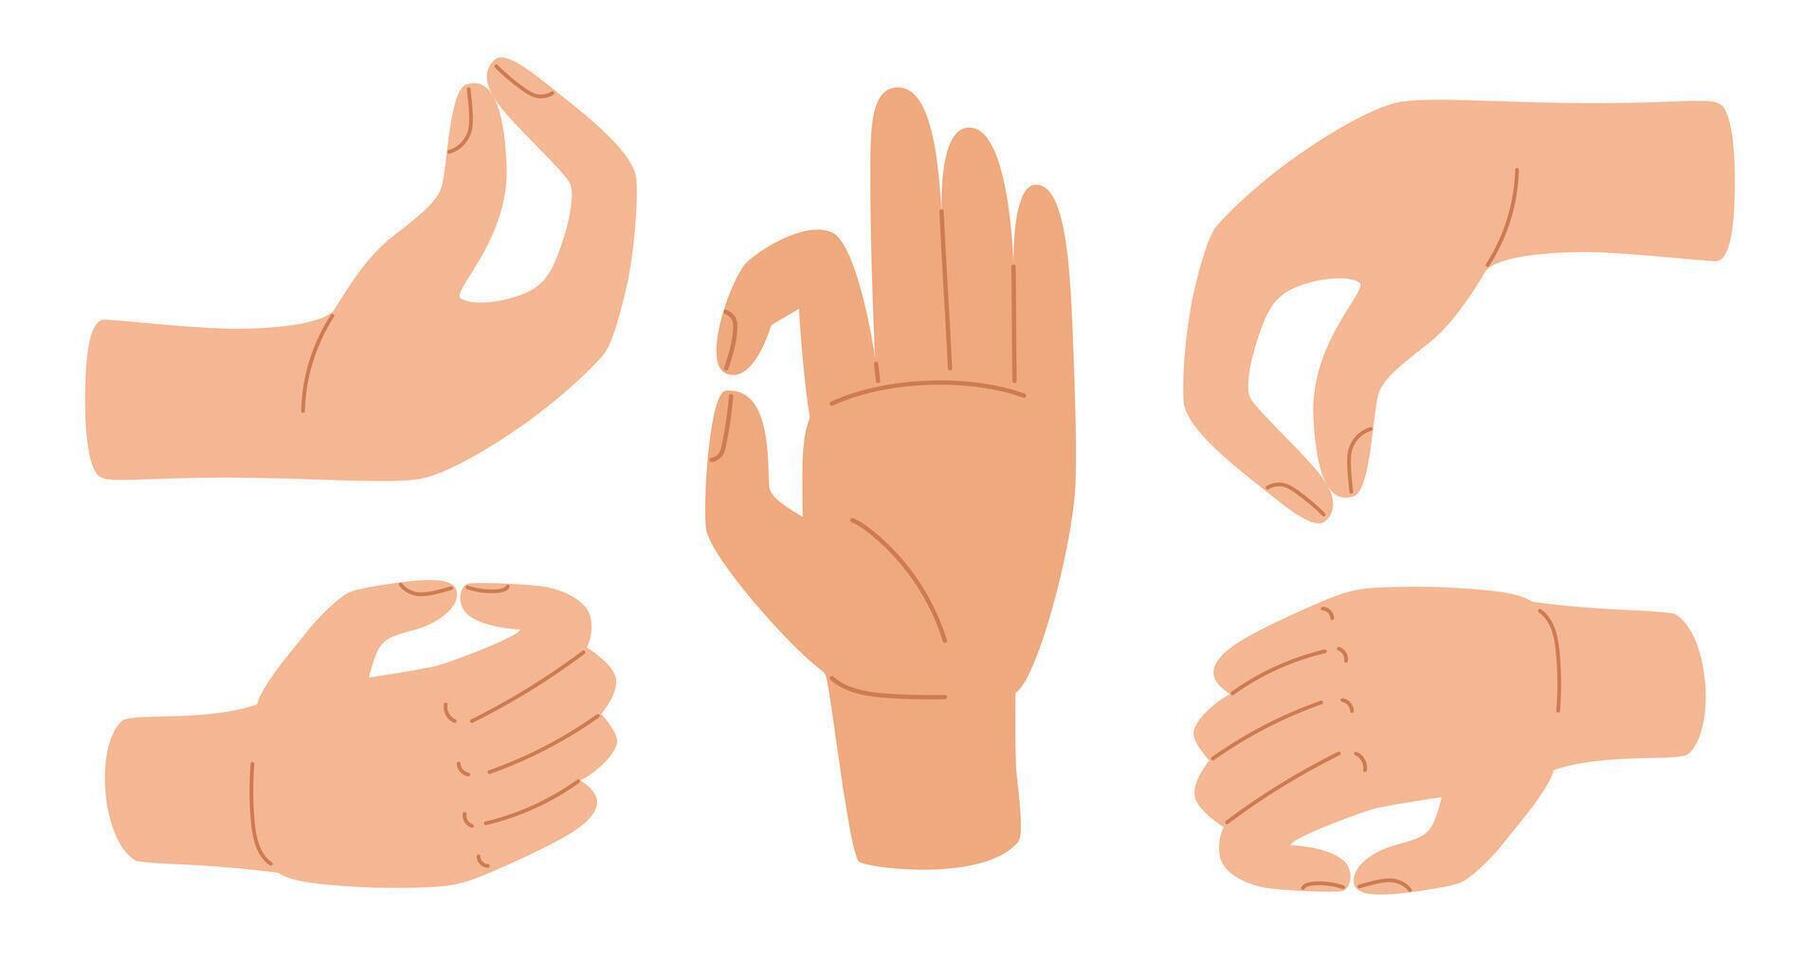 nypa mänsklig hand. klämd fingrar hand gest. handflatan och fingrar lagd i gester av innehav eller ger något. vektor illustration i hand dragen stil